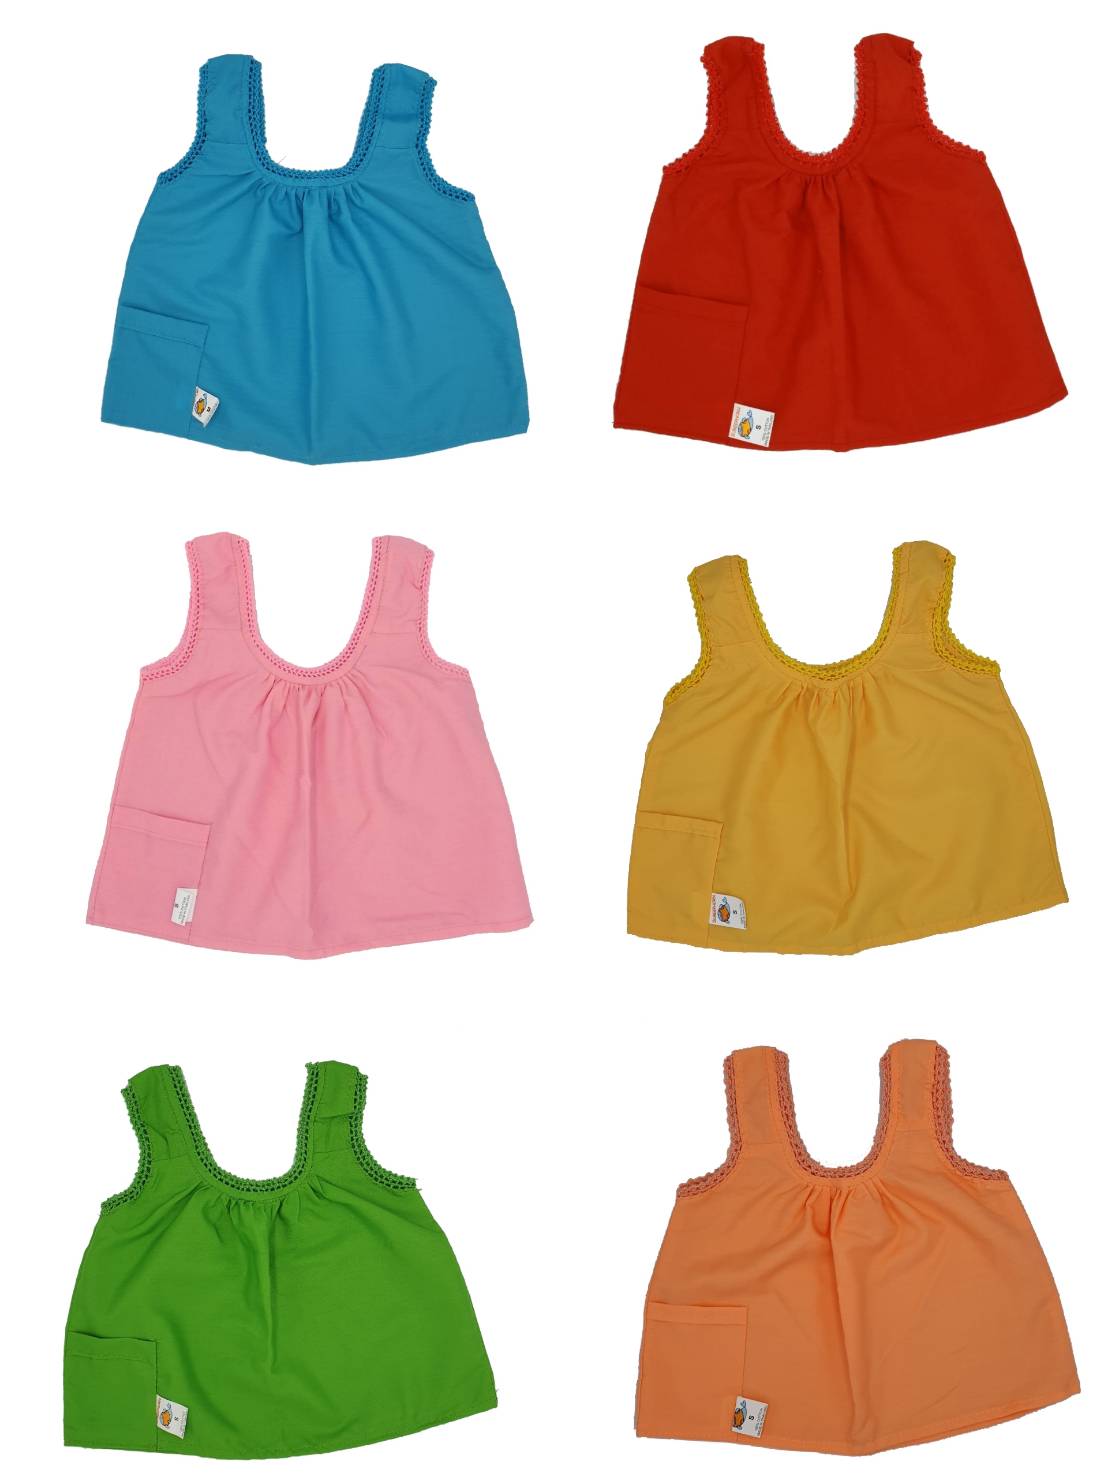 เสื้อคอกระเช้าสำหรับเด็ก 3 ตัวคละสี ราคาพิเศษ (ไม่สามารถเลือกสีได้)